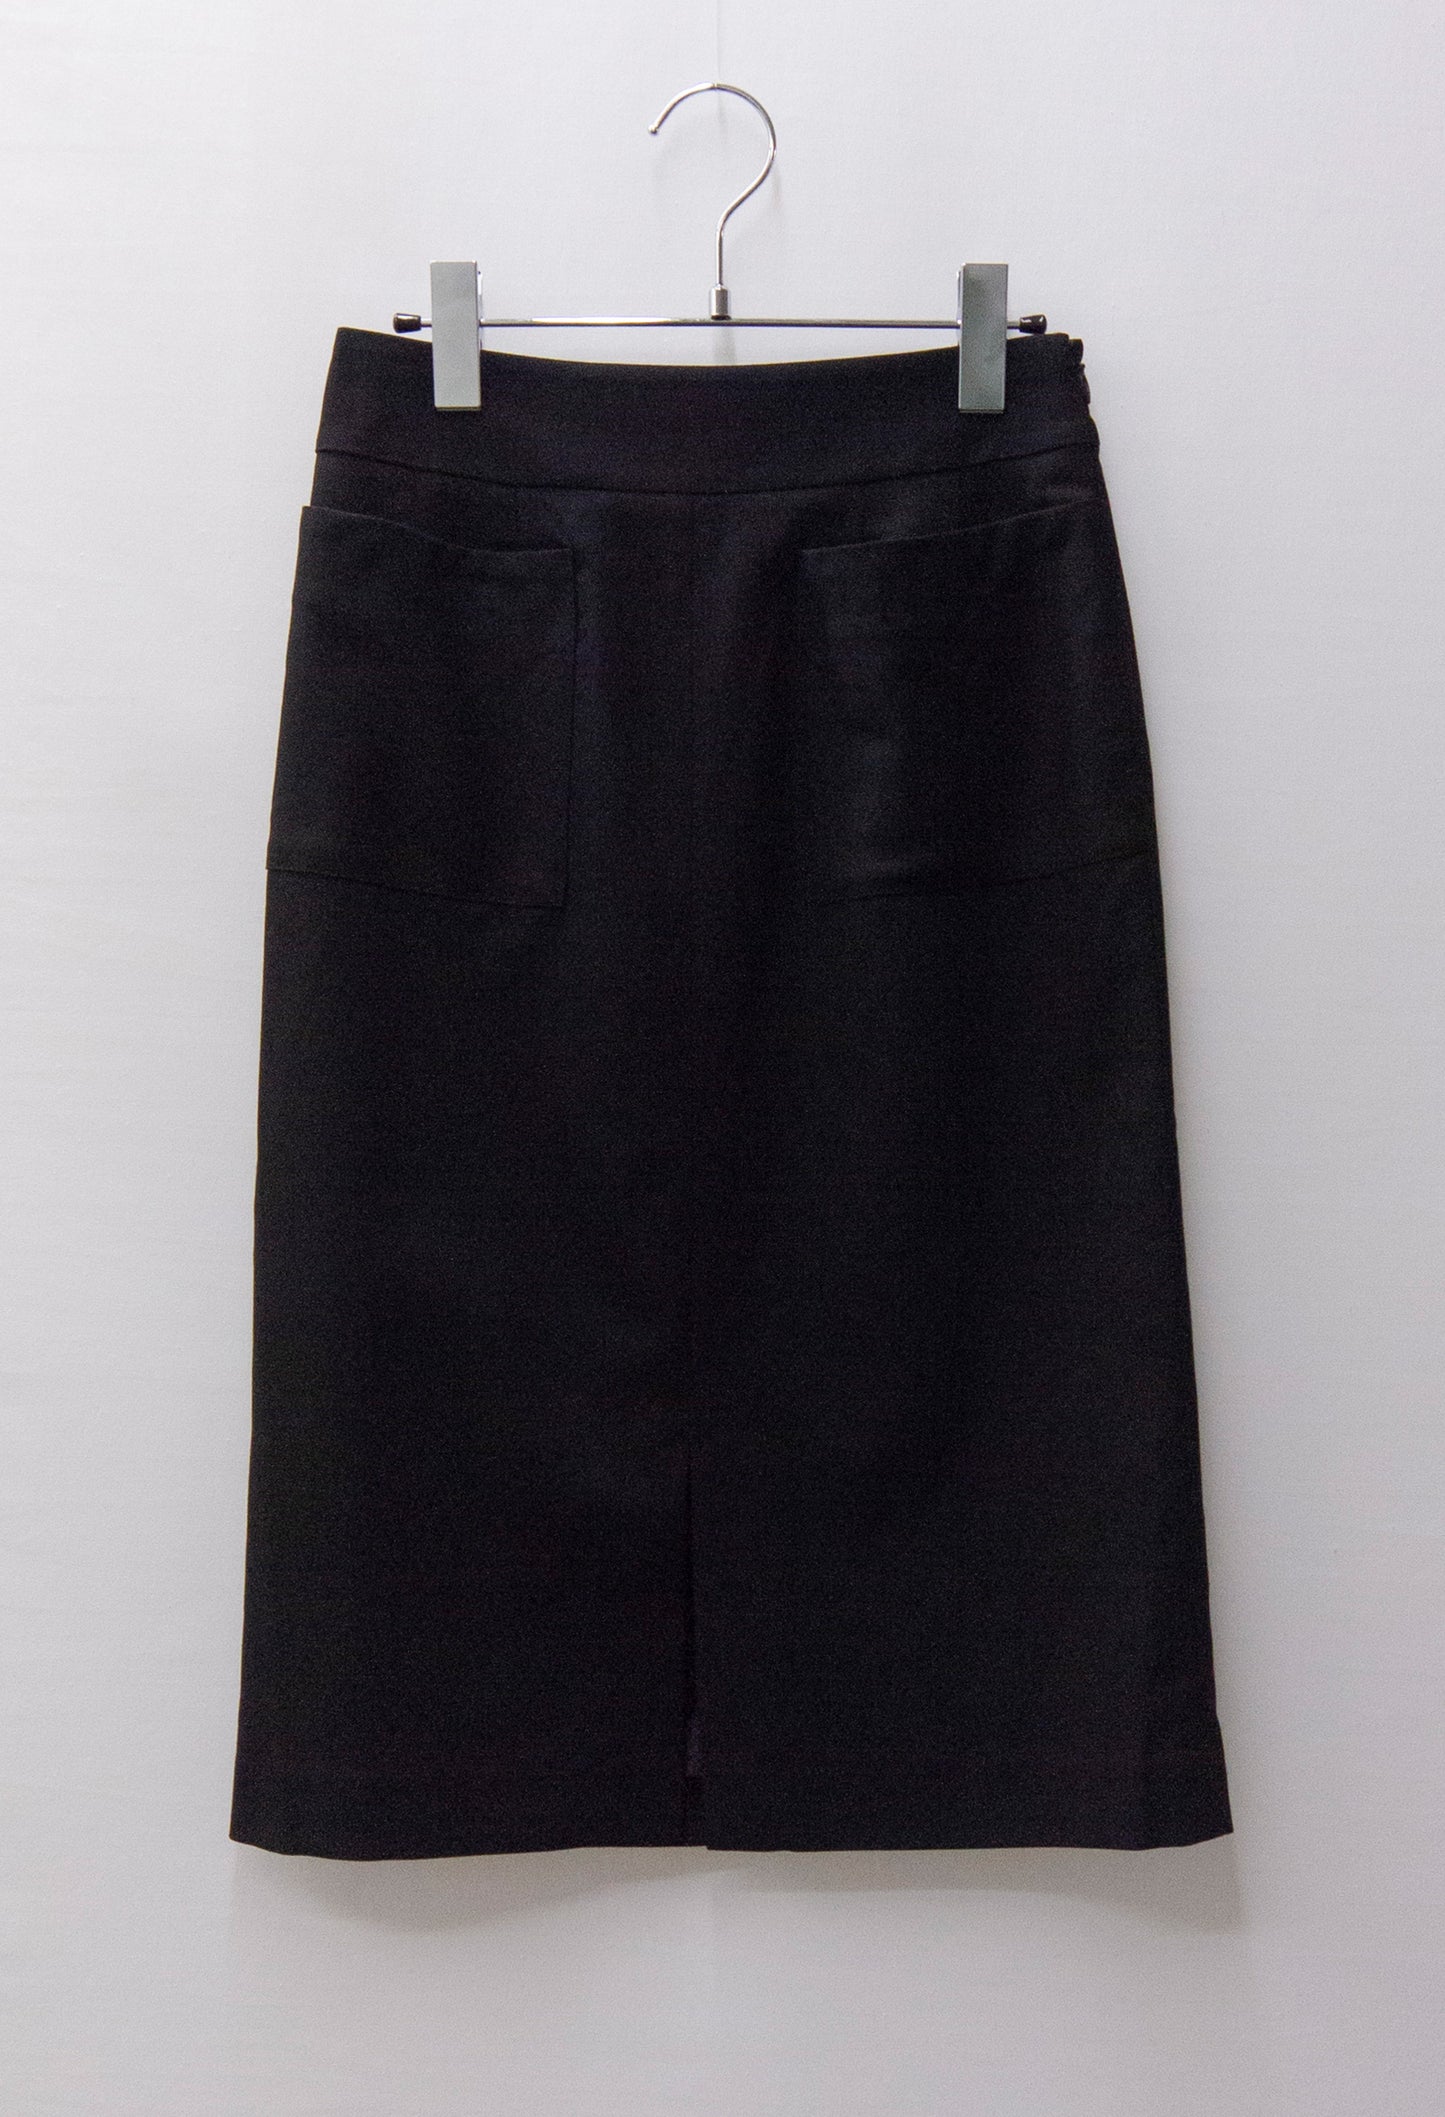 無地/千鳥両ポケット付きタイトスカート(681-1730)